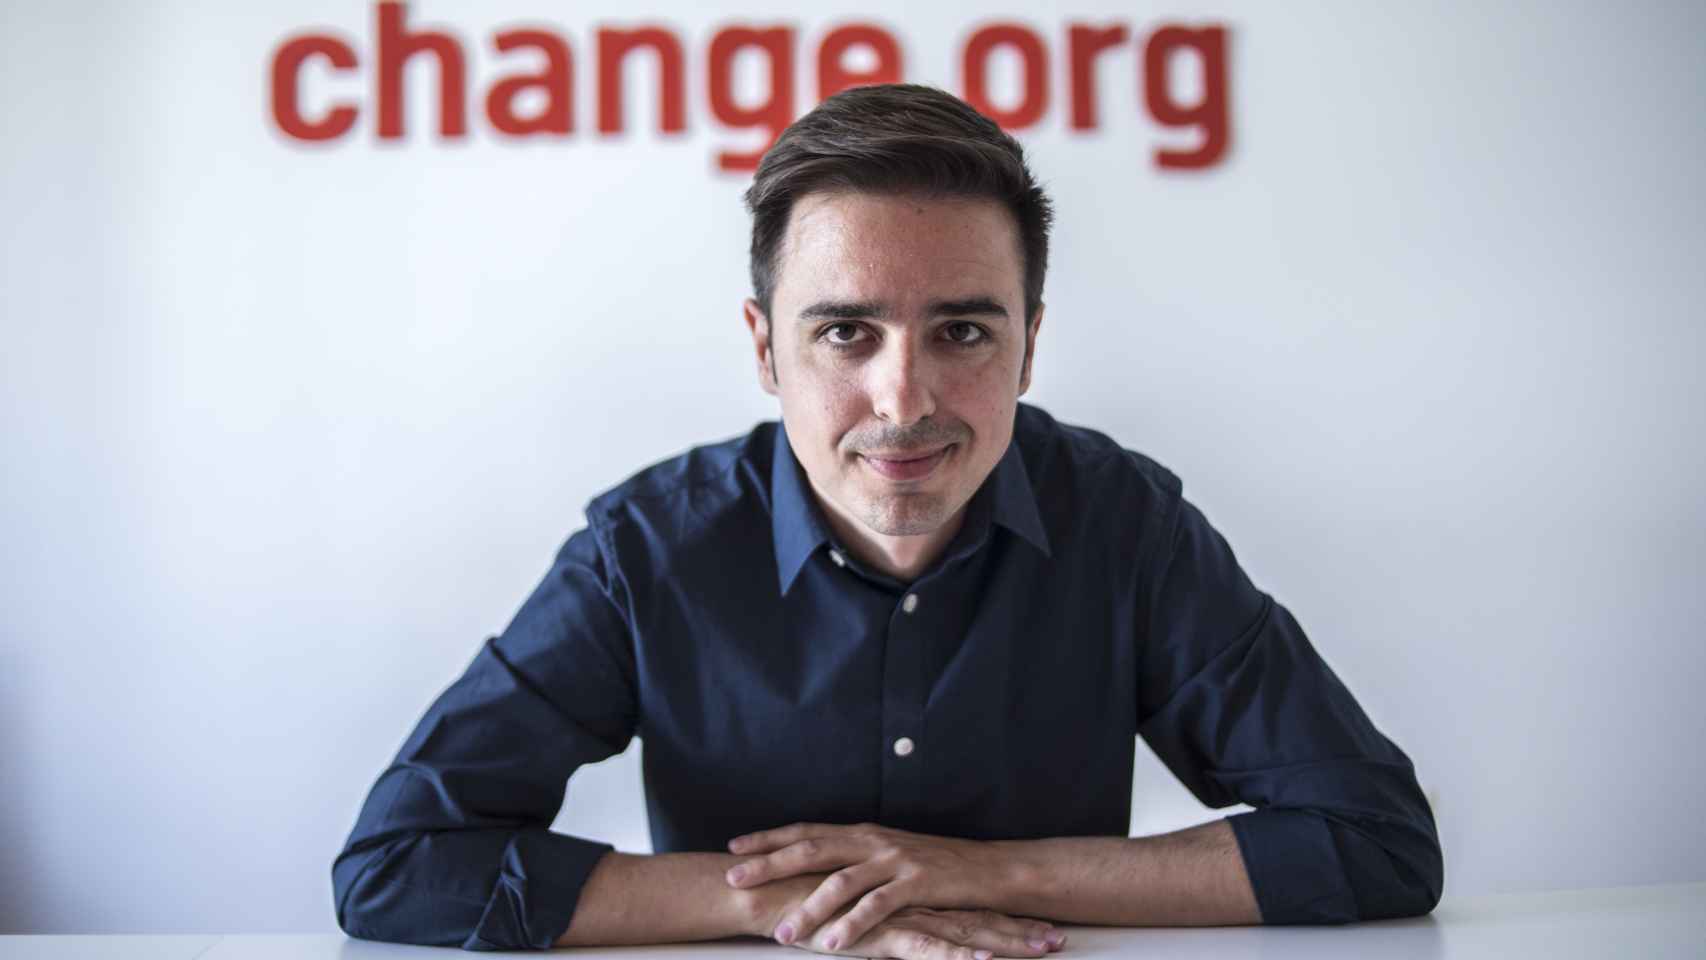 José Antonio Ritoré es el director de Change.org, la mayor plataforma de ciberactivismo